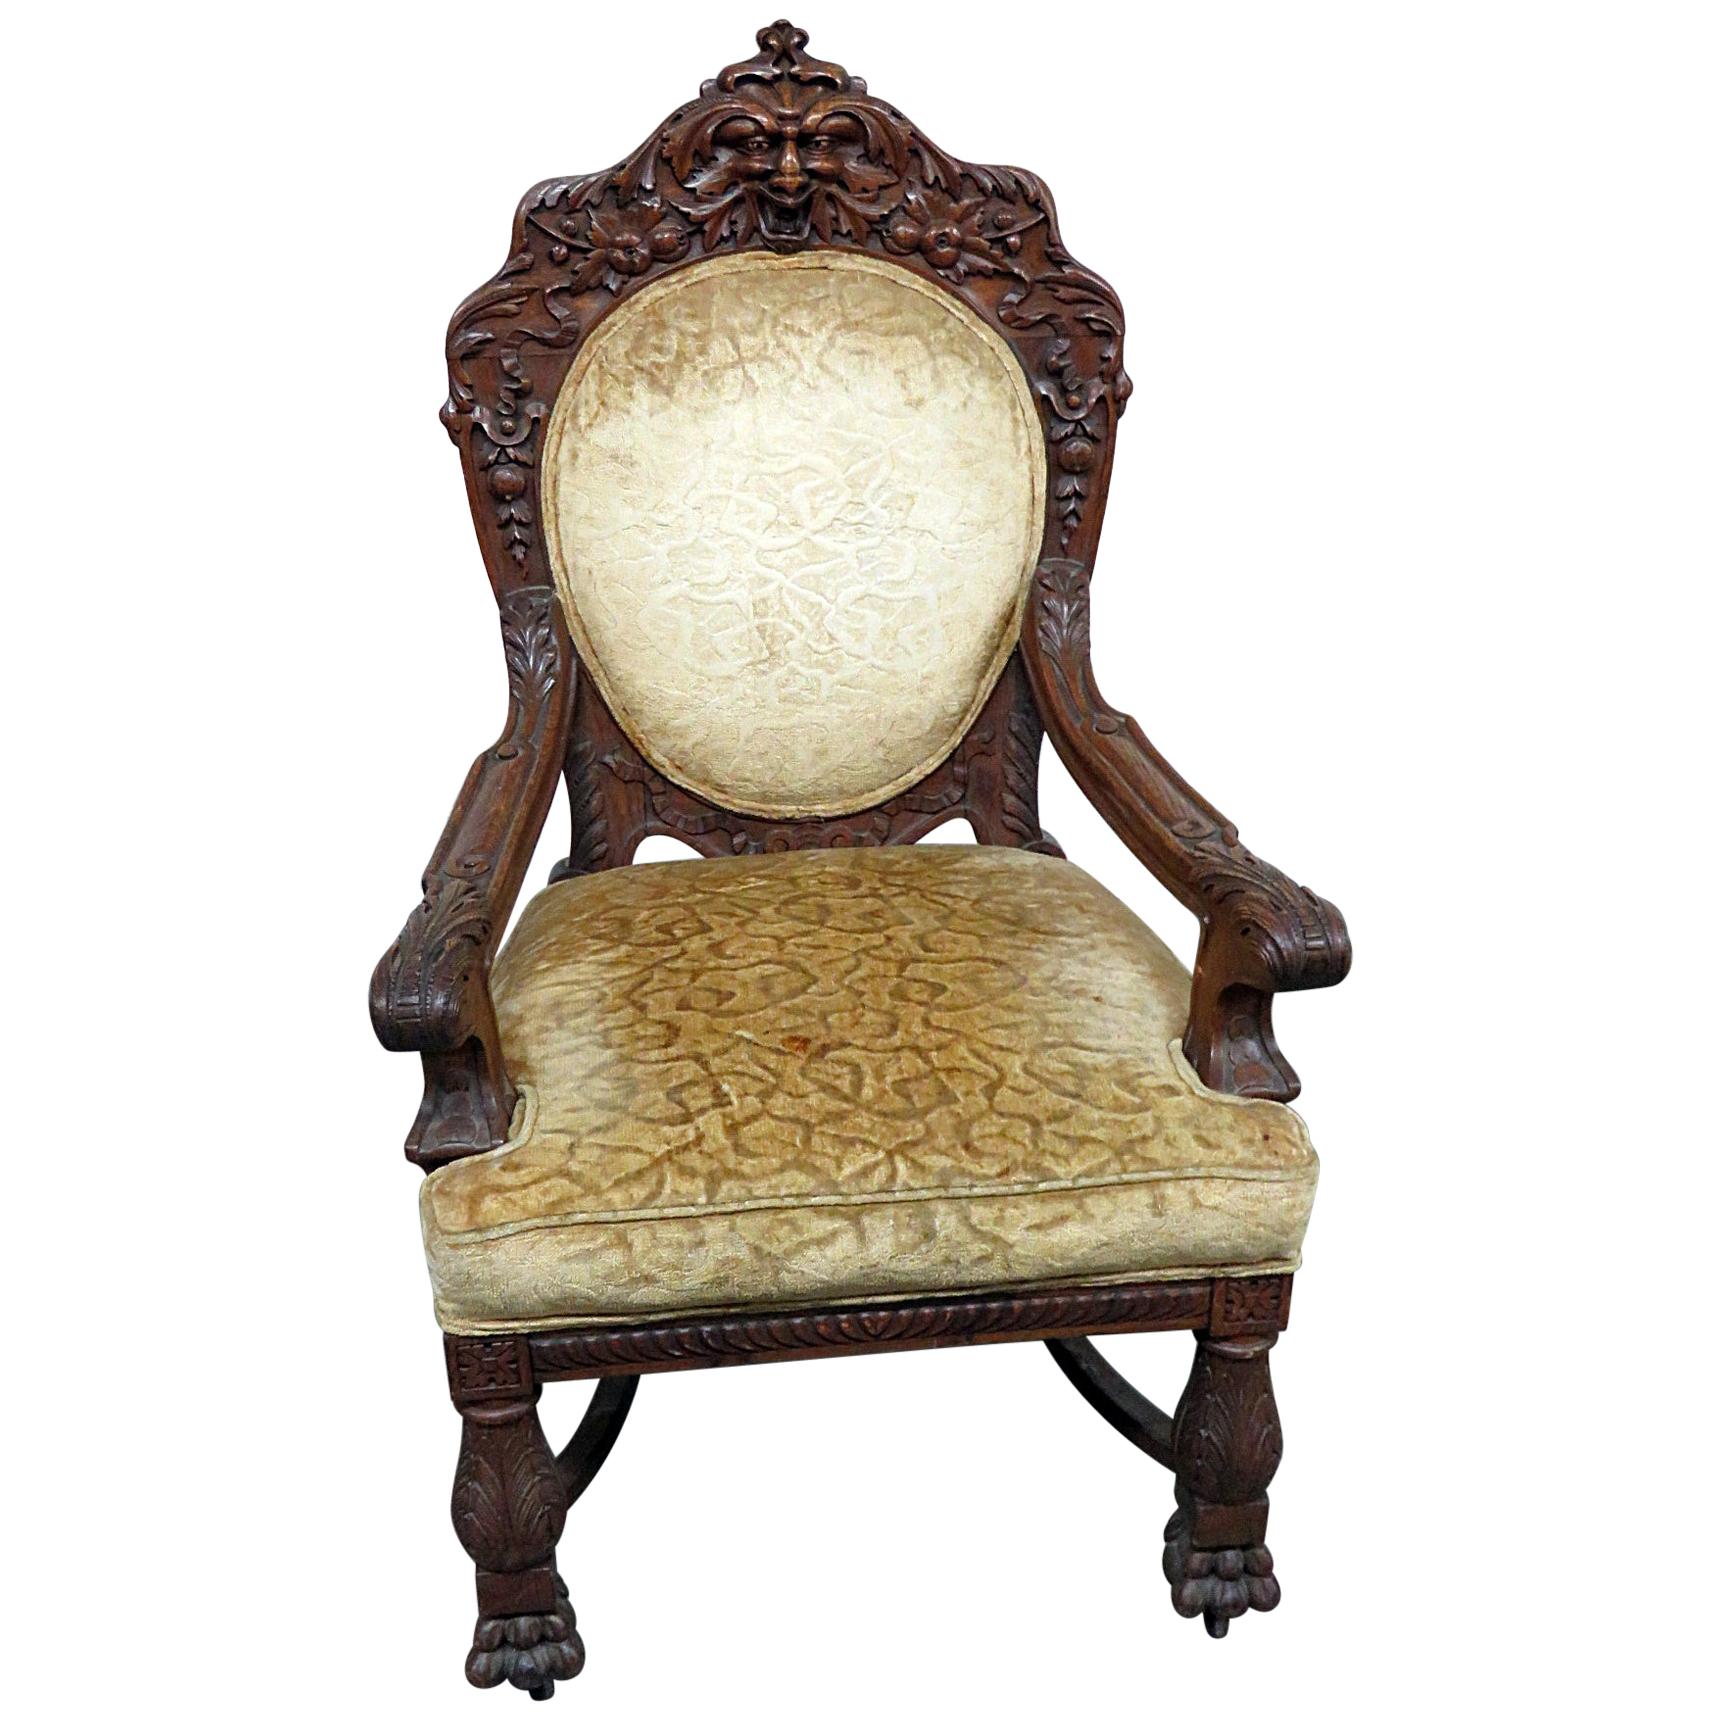 Chaise trône en chêne de style Renaissance attribuée à Horner